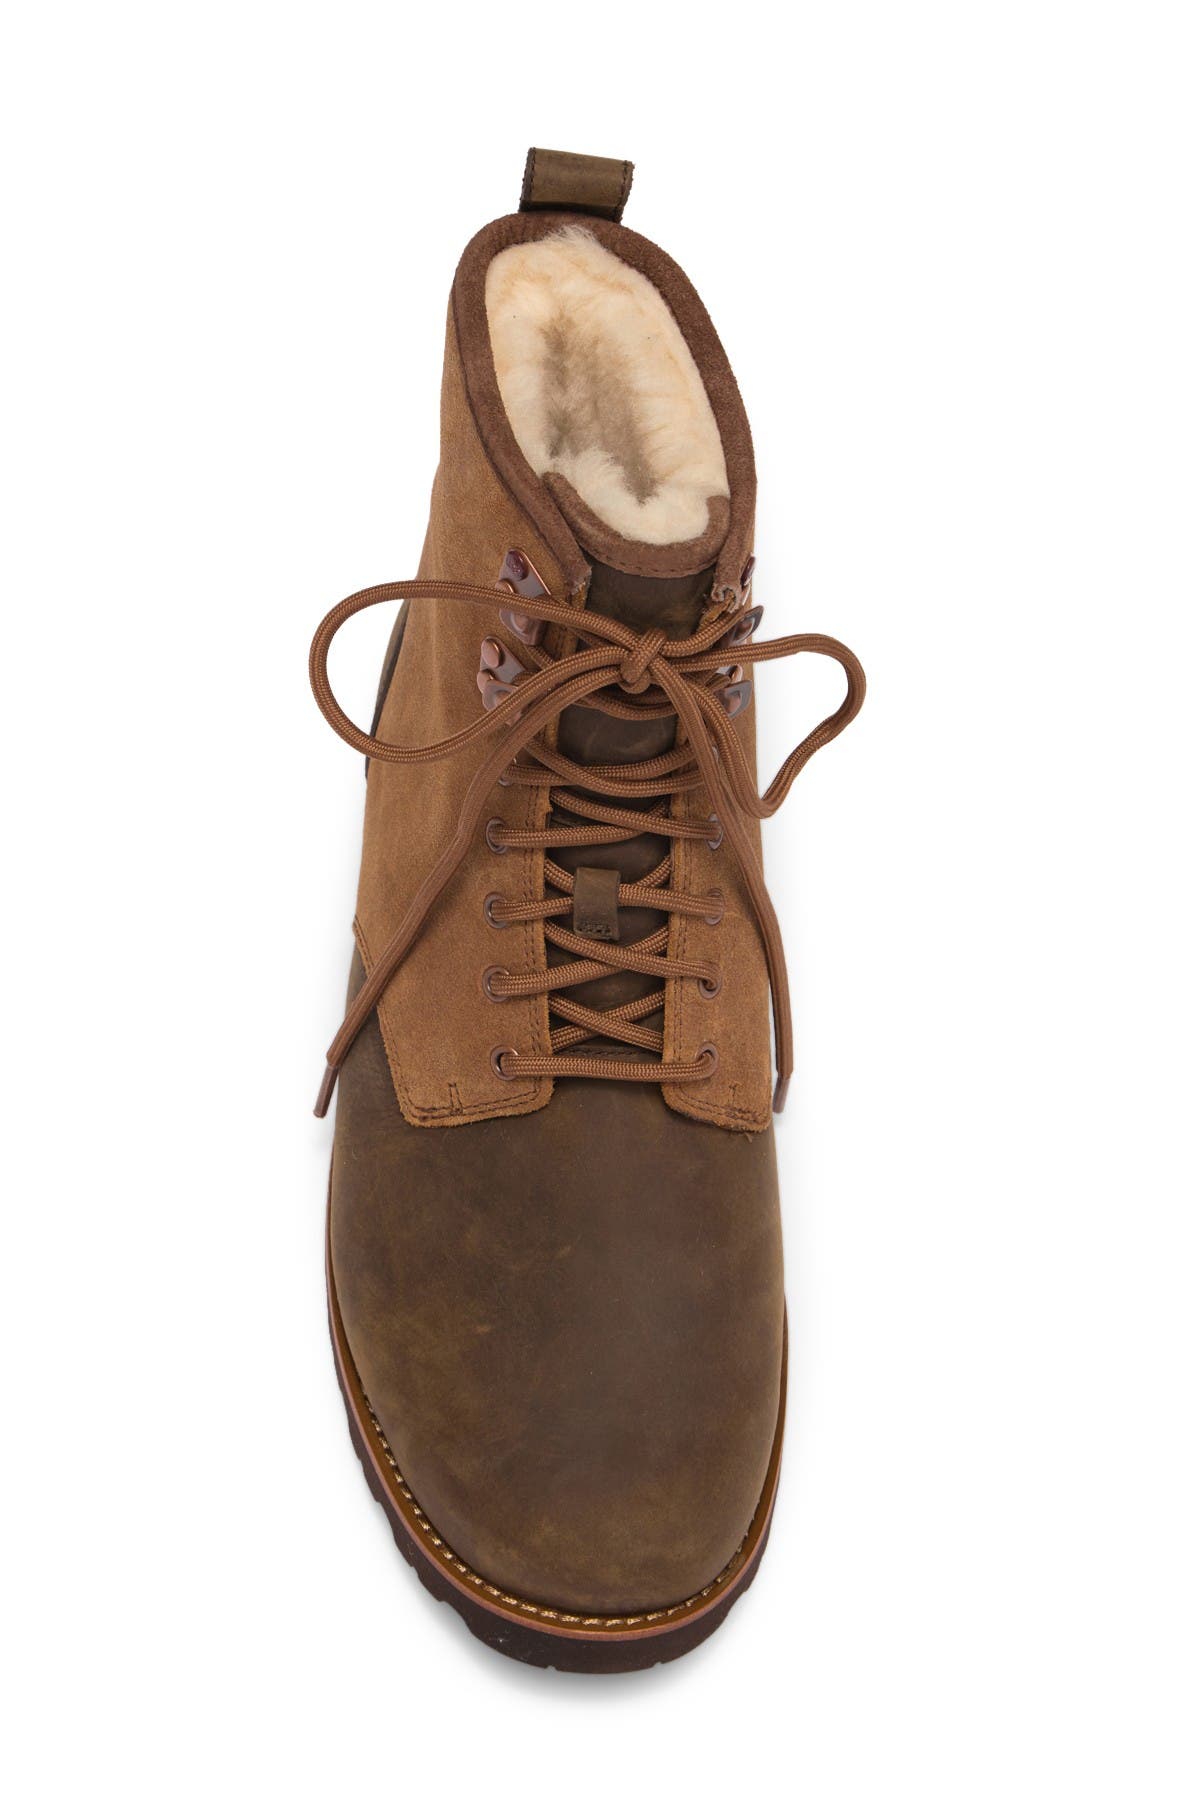 hannen plain toe waterproof boot with genuine shearling